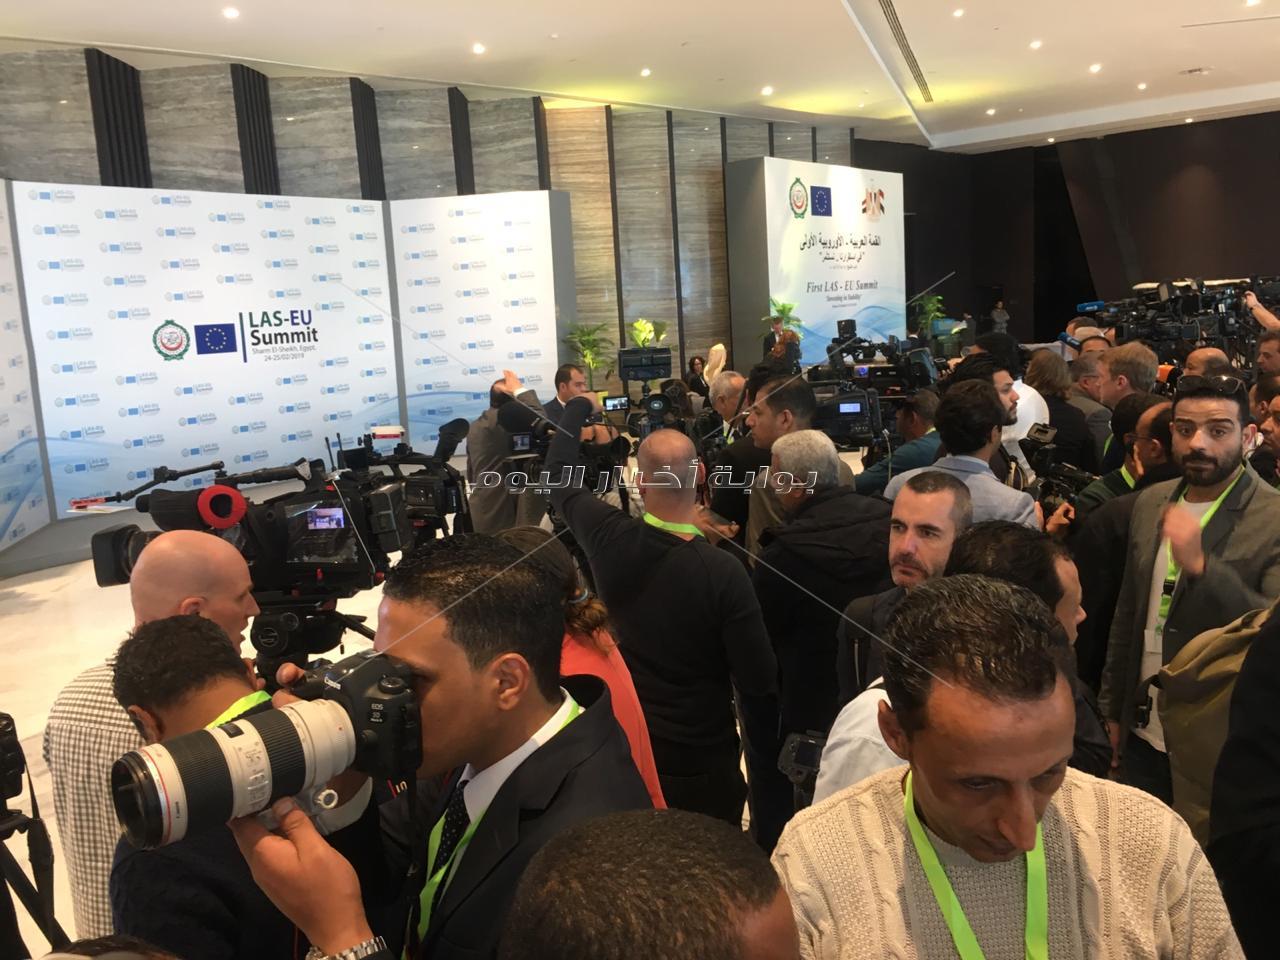 القمة العربية الأوروبية| وسائل الإعلام في انتظار وصول الرؤساء والقادة